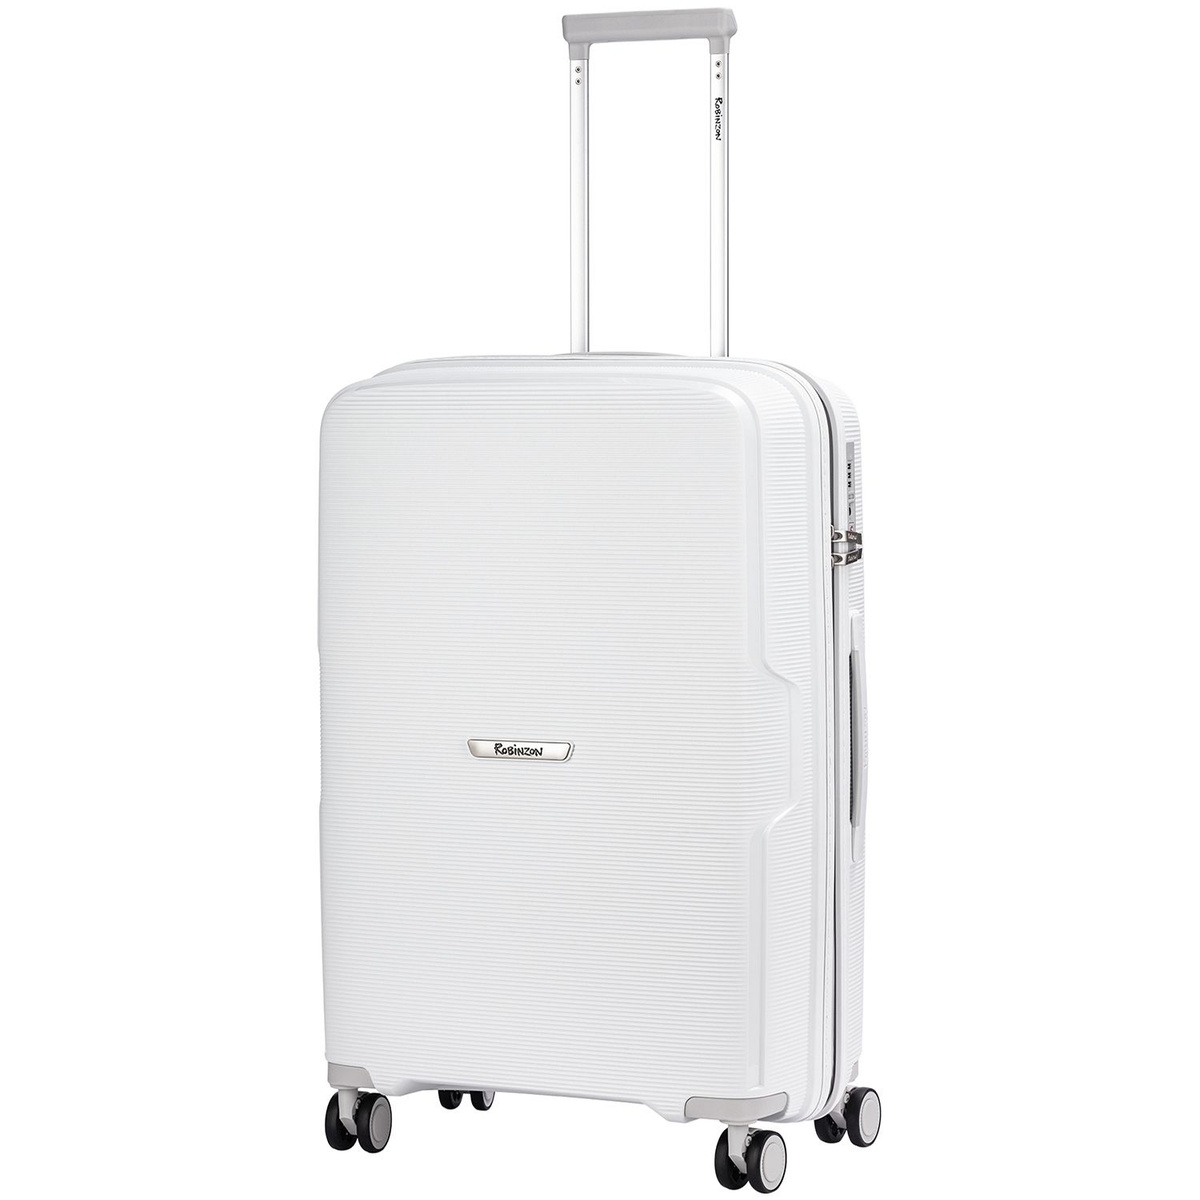 Размер чемодана: 46x67x26 см Вес чемодана: всего 3,1 кг Объём чемодана: 70 л